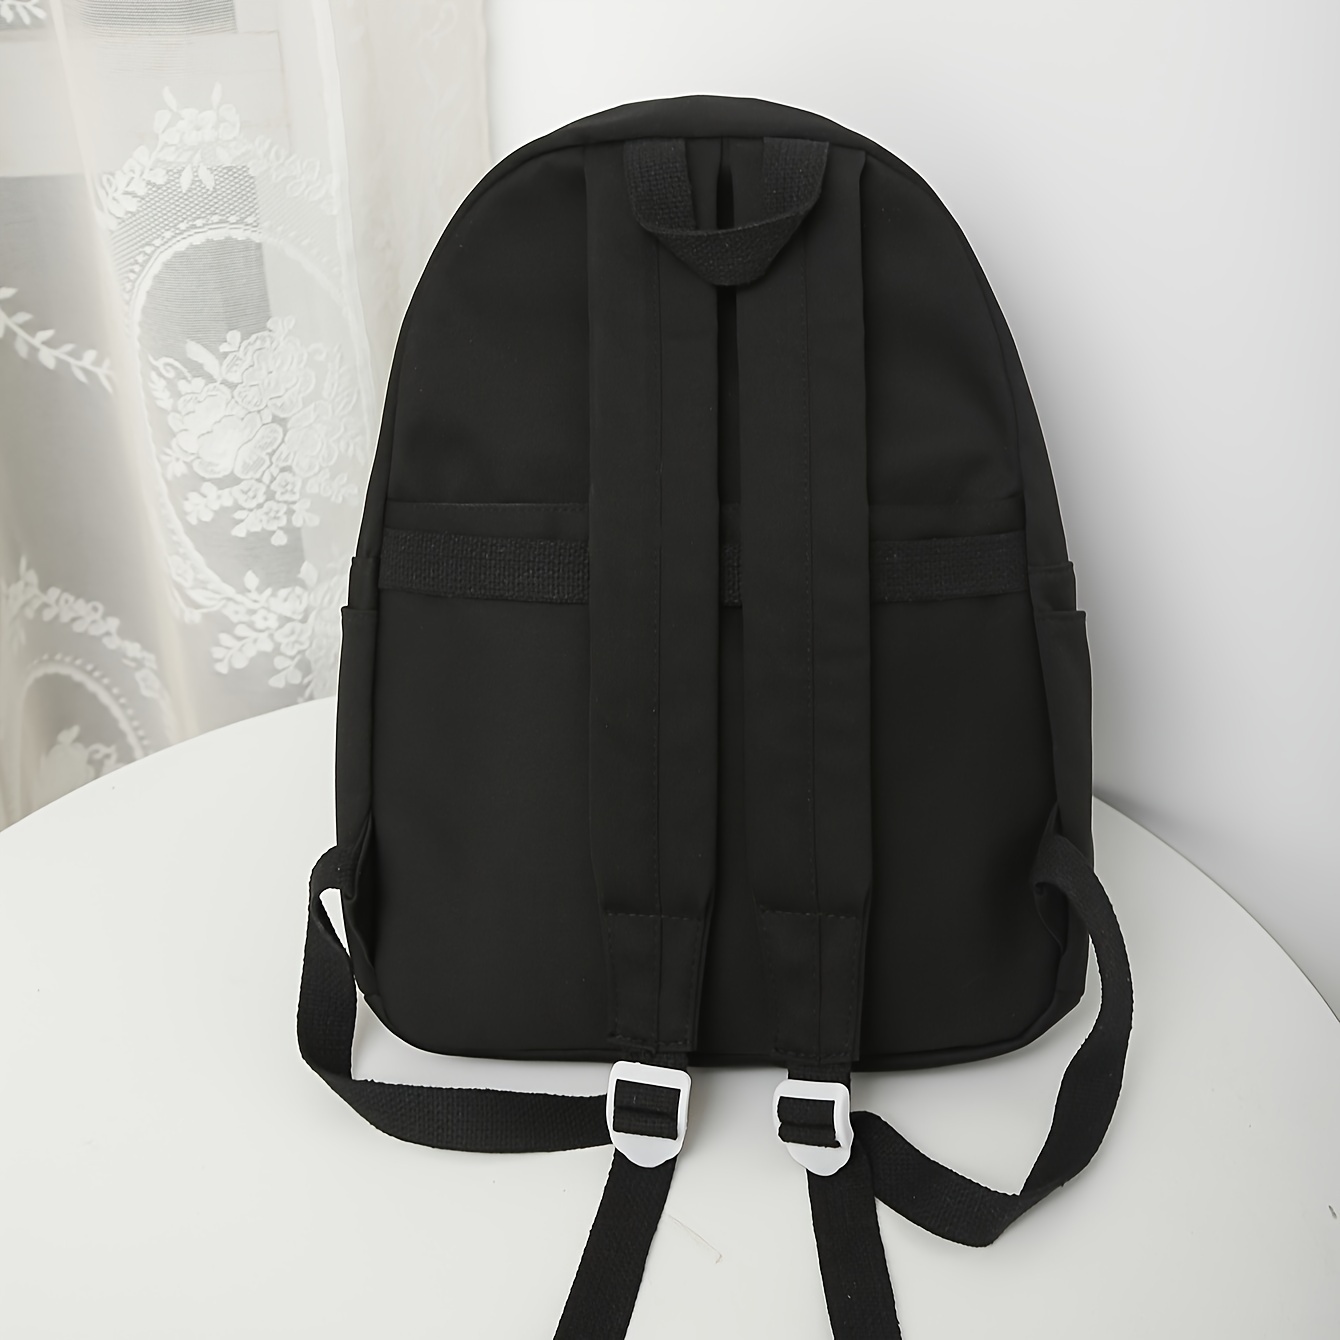 fashion solid color backpack preppy college school daypack travel commute knapsack laptop bag